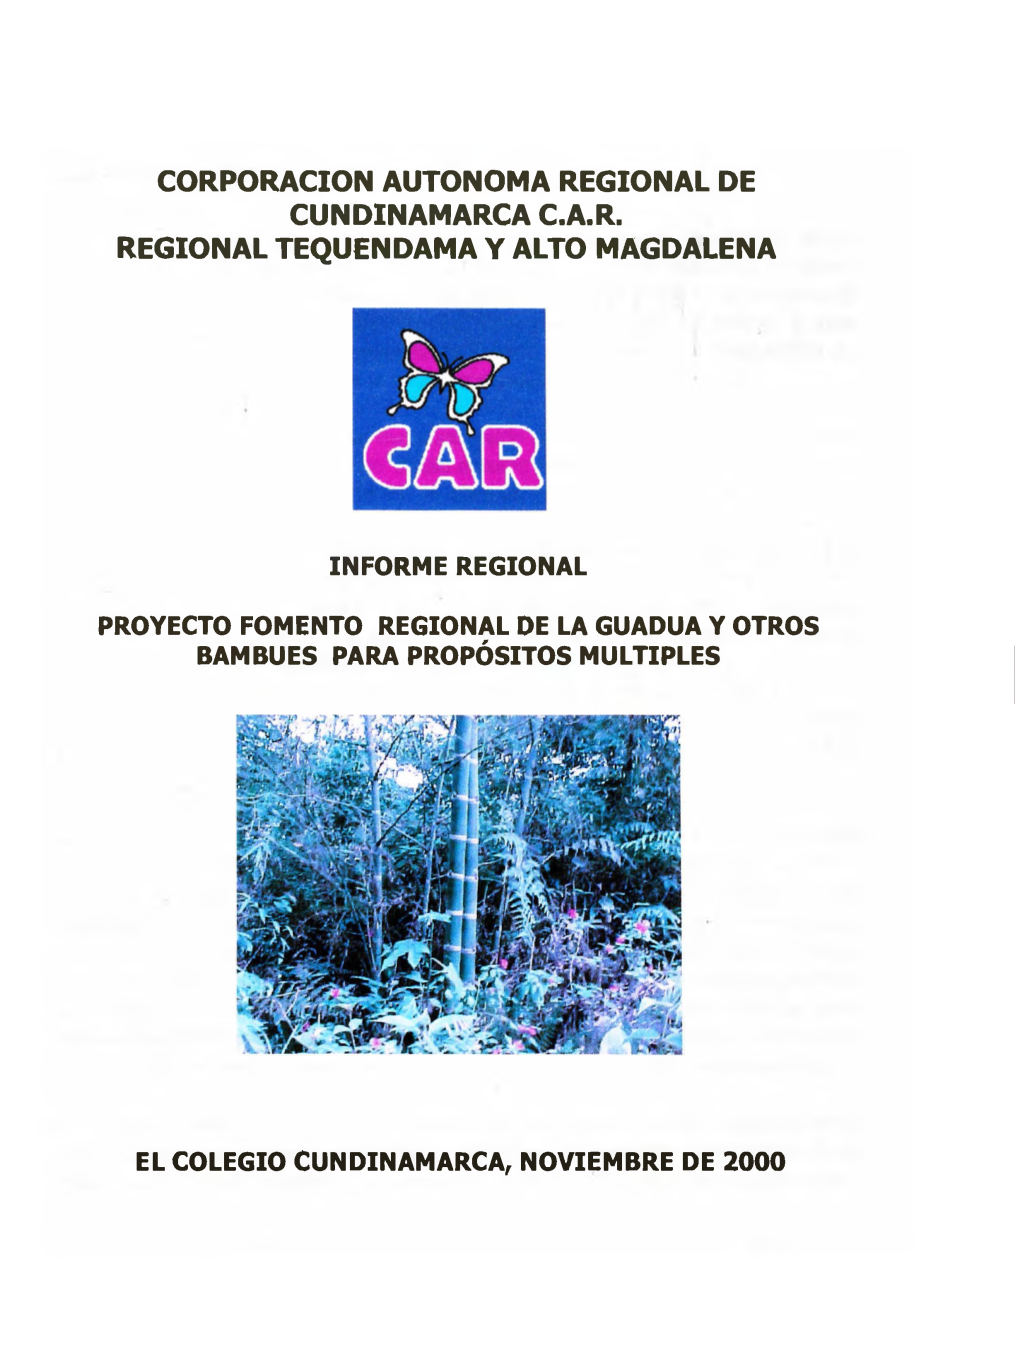 Corporacion Autonoma Regional De Cundinamarca C.A.R. Regional Tequendama Y Alto Magdalena